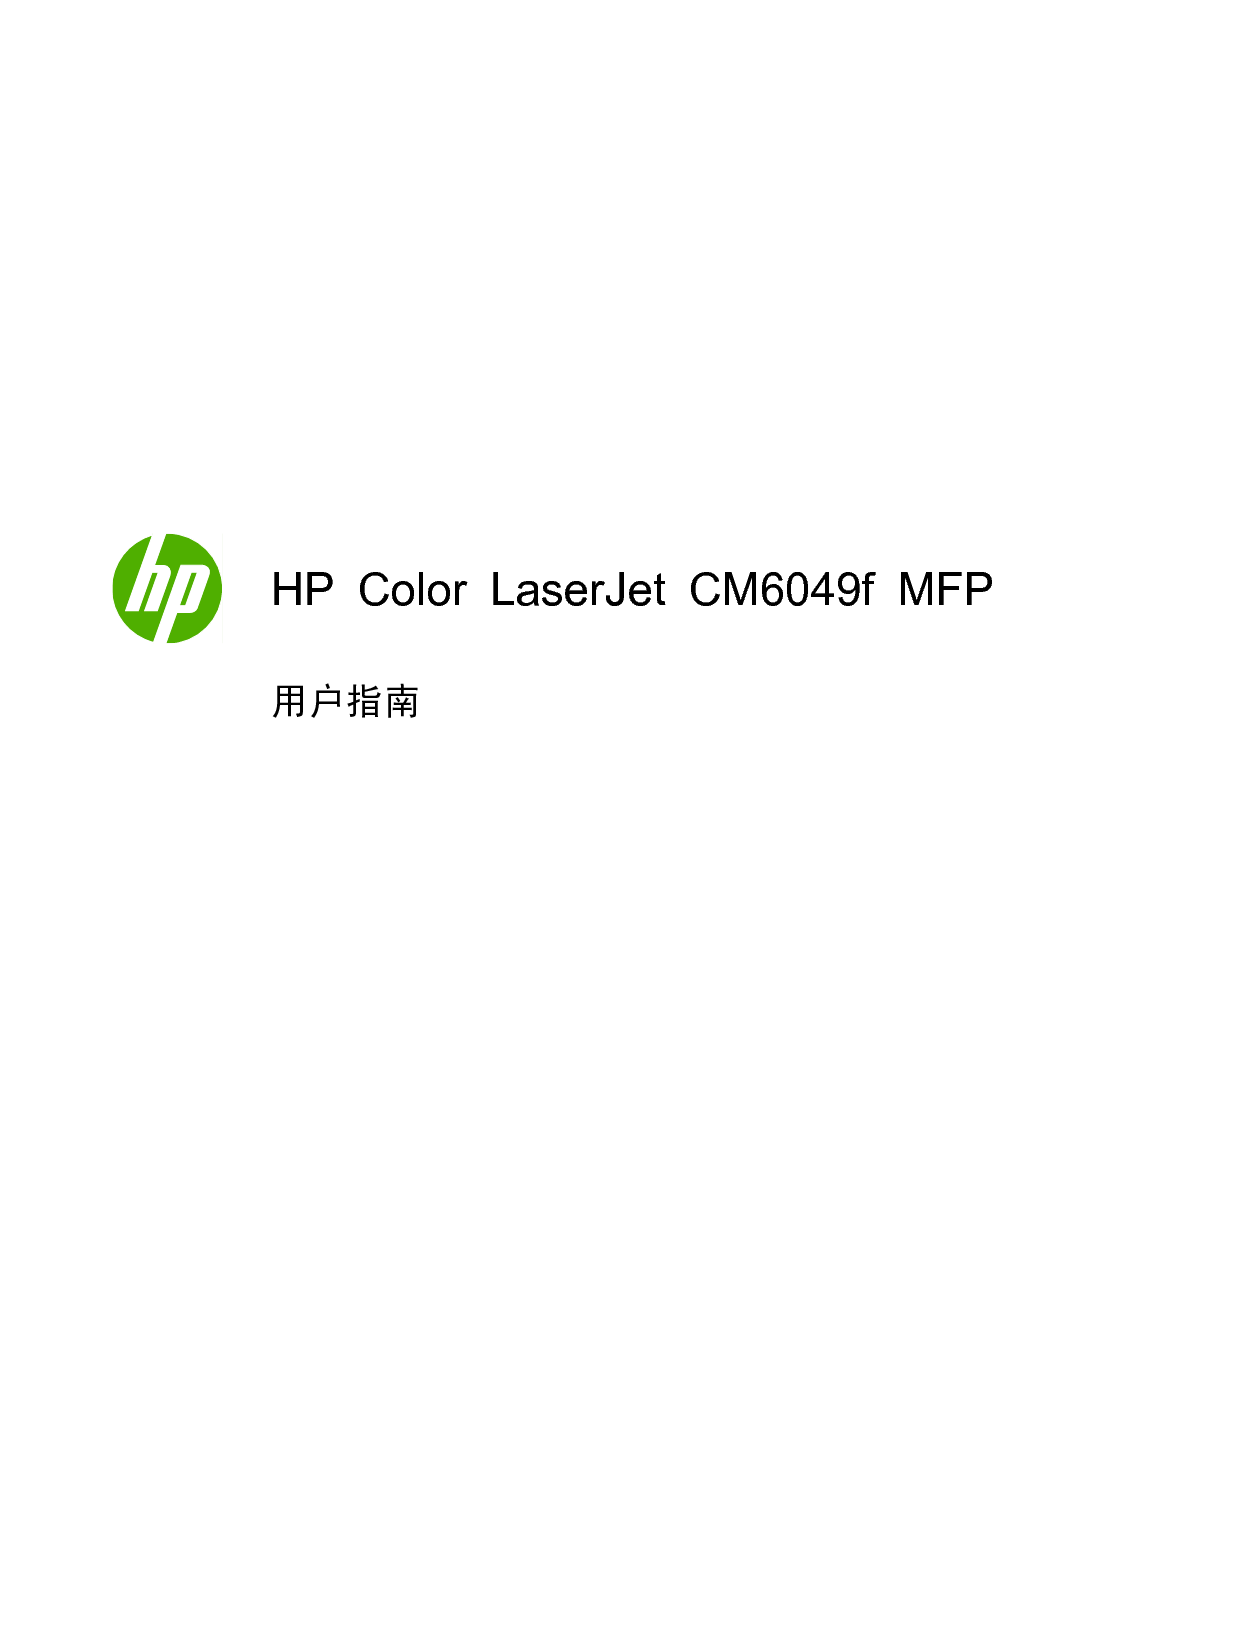 惠普 HP Color LaserJet CM6049f MFP 用户指南 第2页